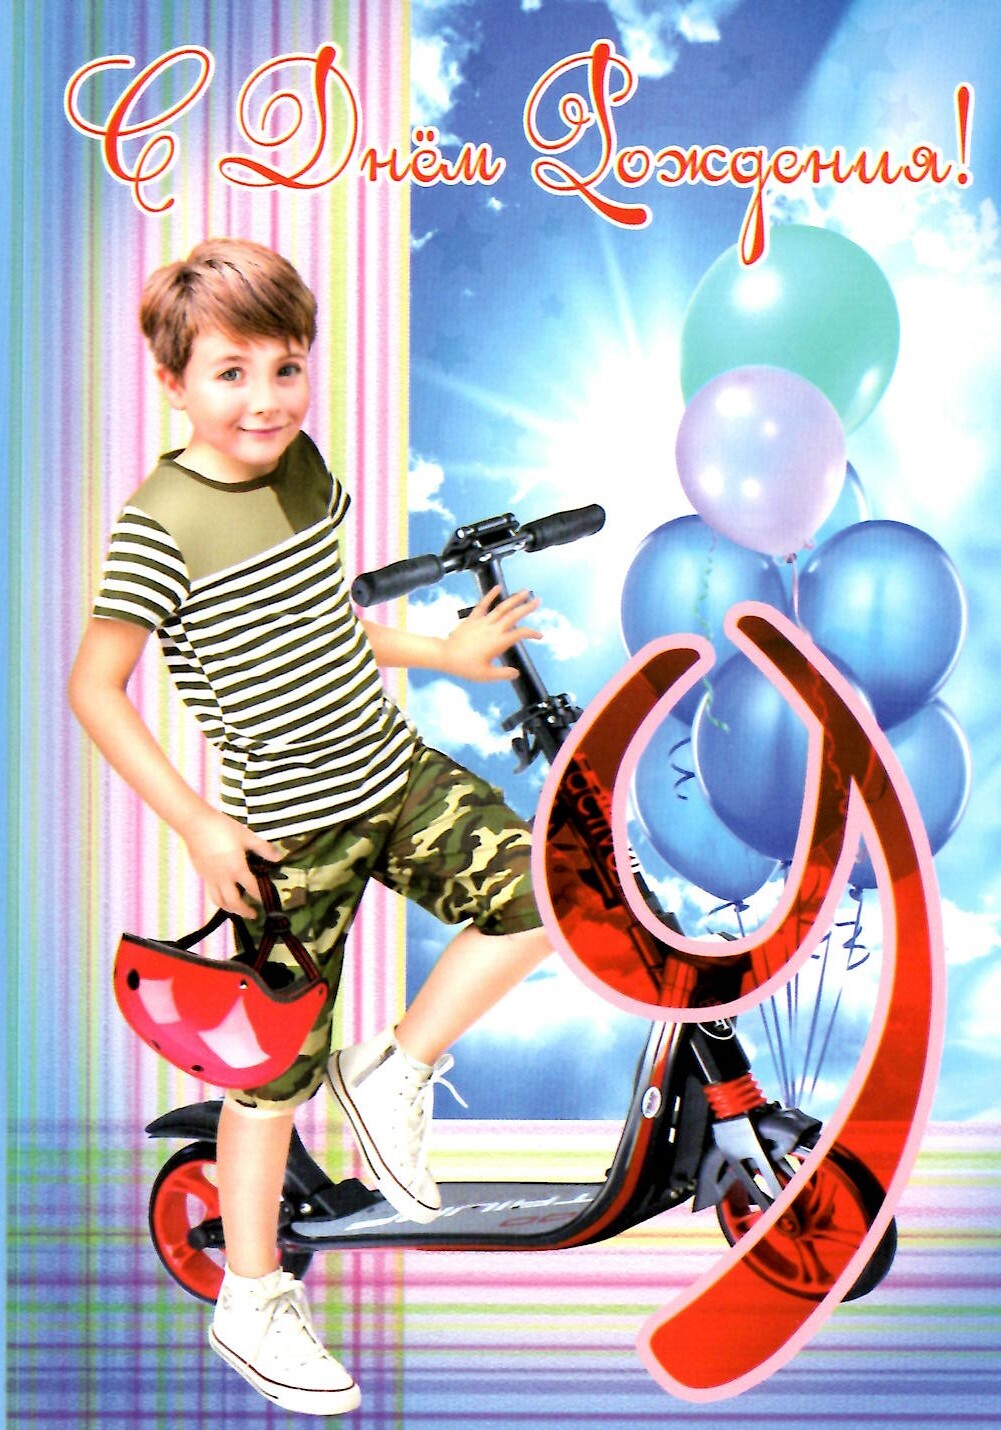 День рождения мальчика екатеринбург. С днём рождения 9 лет мальчику. Сднем рождения мальчикум9 лет. МС днем рождения мальчику 9леь. С днем рождения 9 летмалтчику.